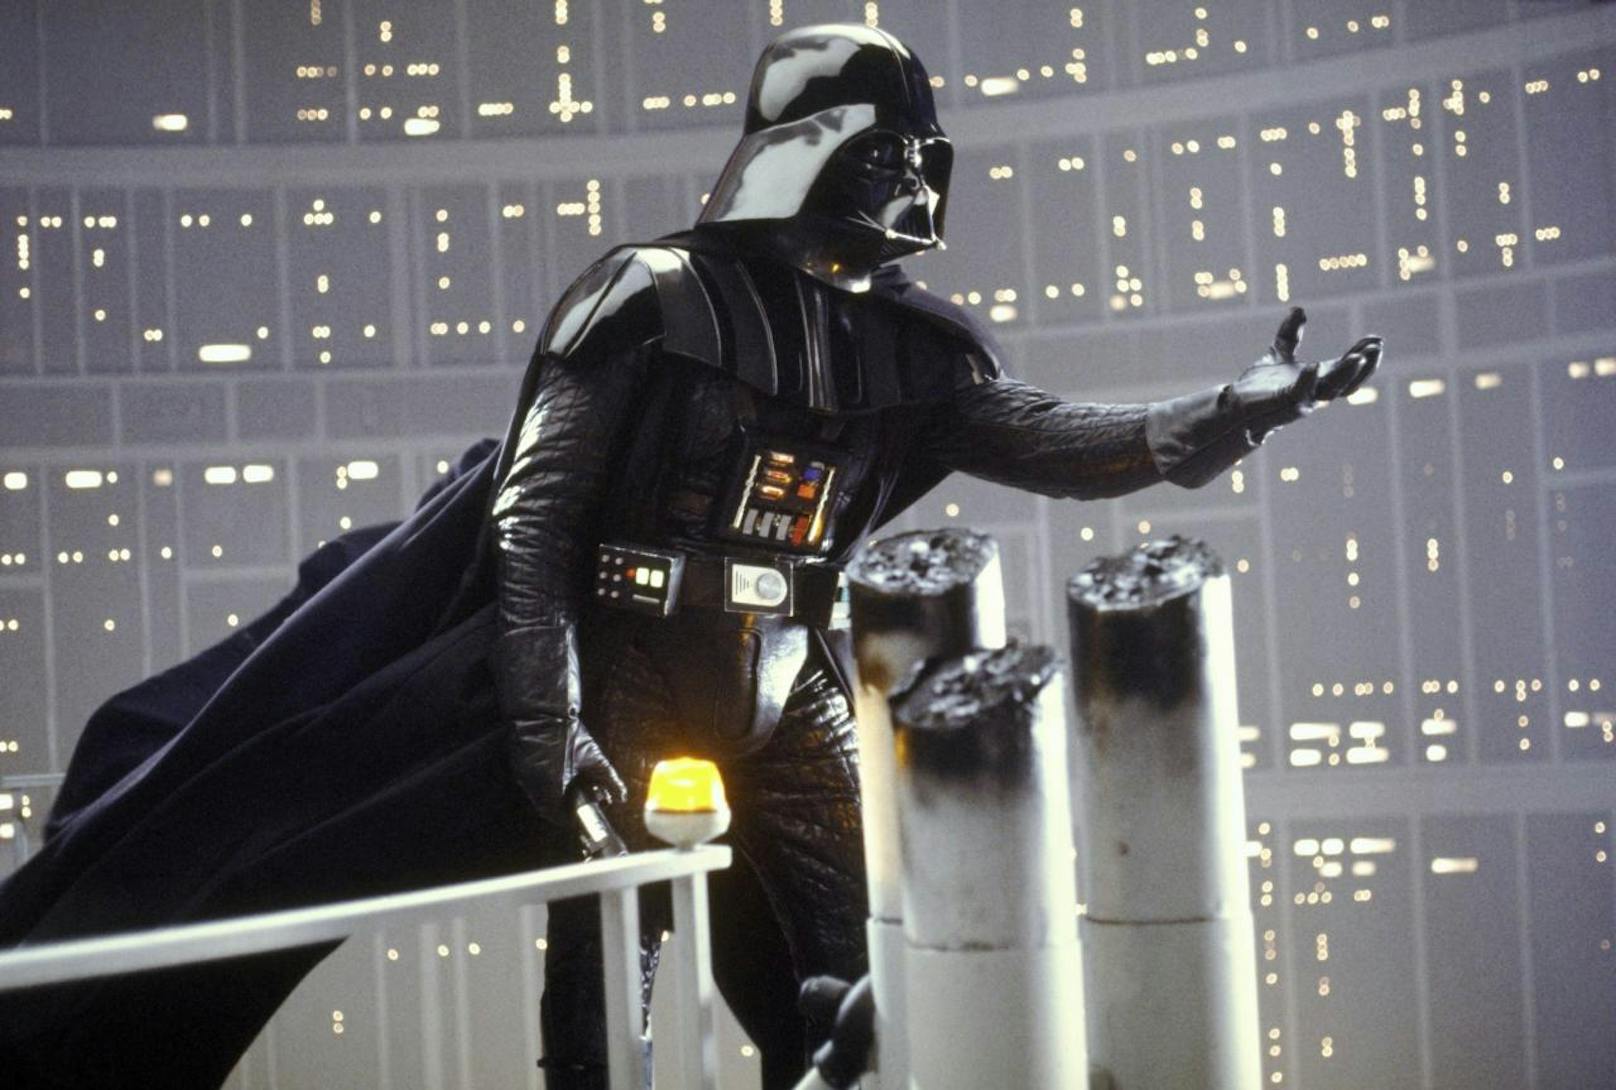 Darth Vader versucht, Luke auf die dunkle Seite zu ziehen.